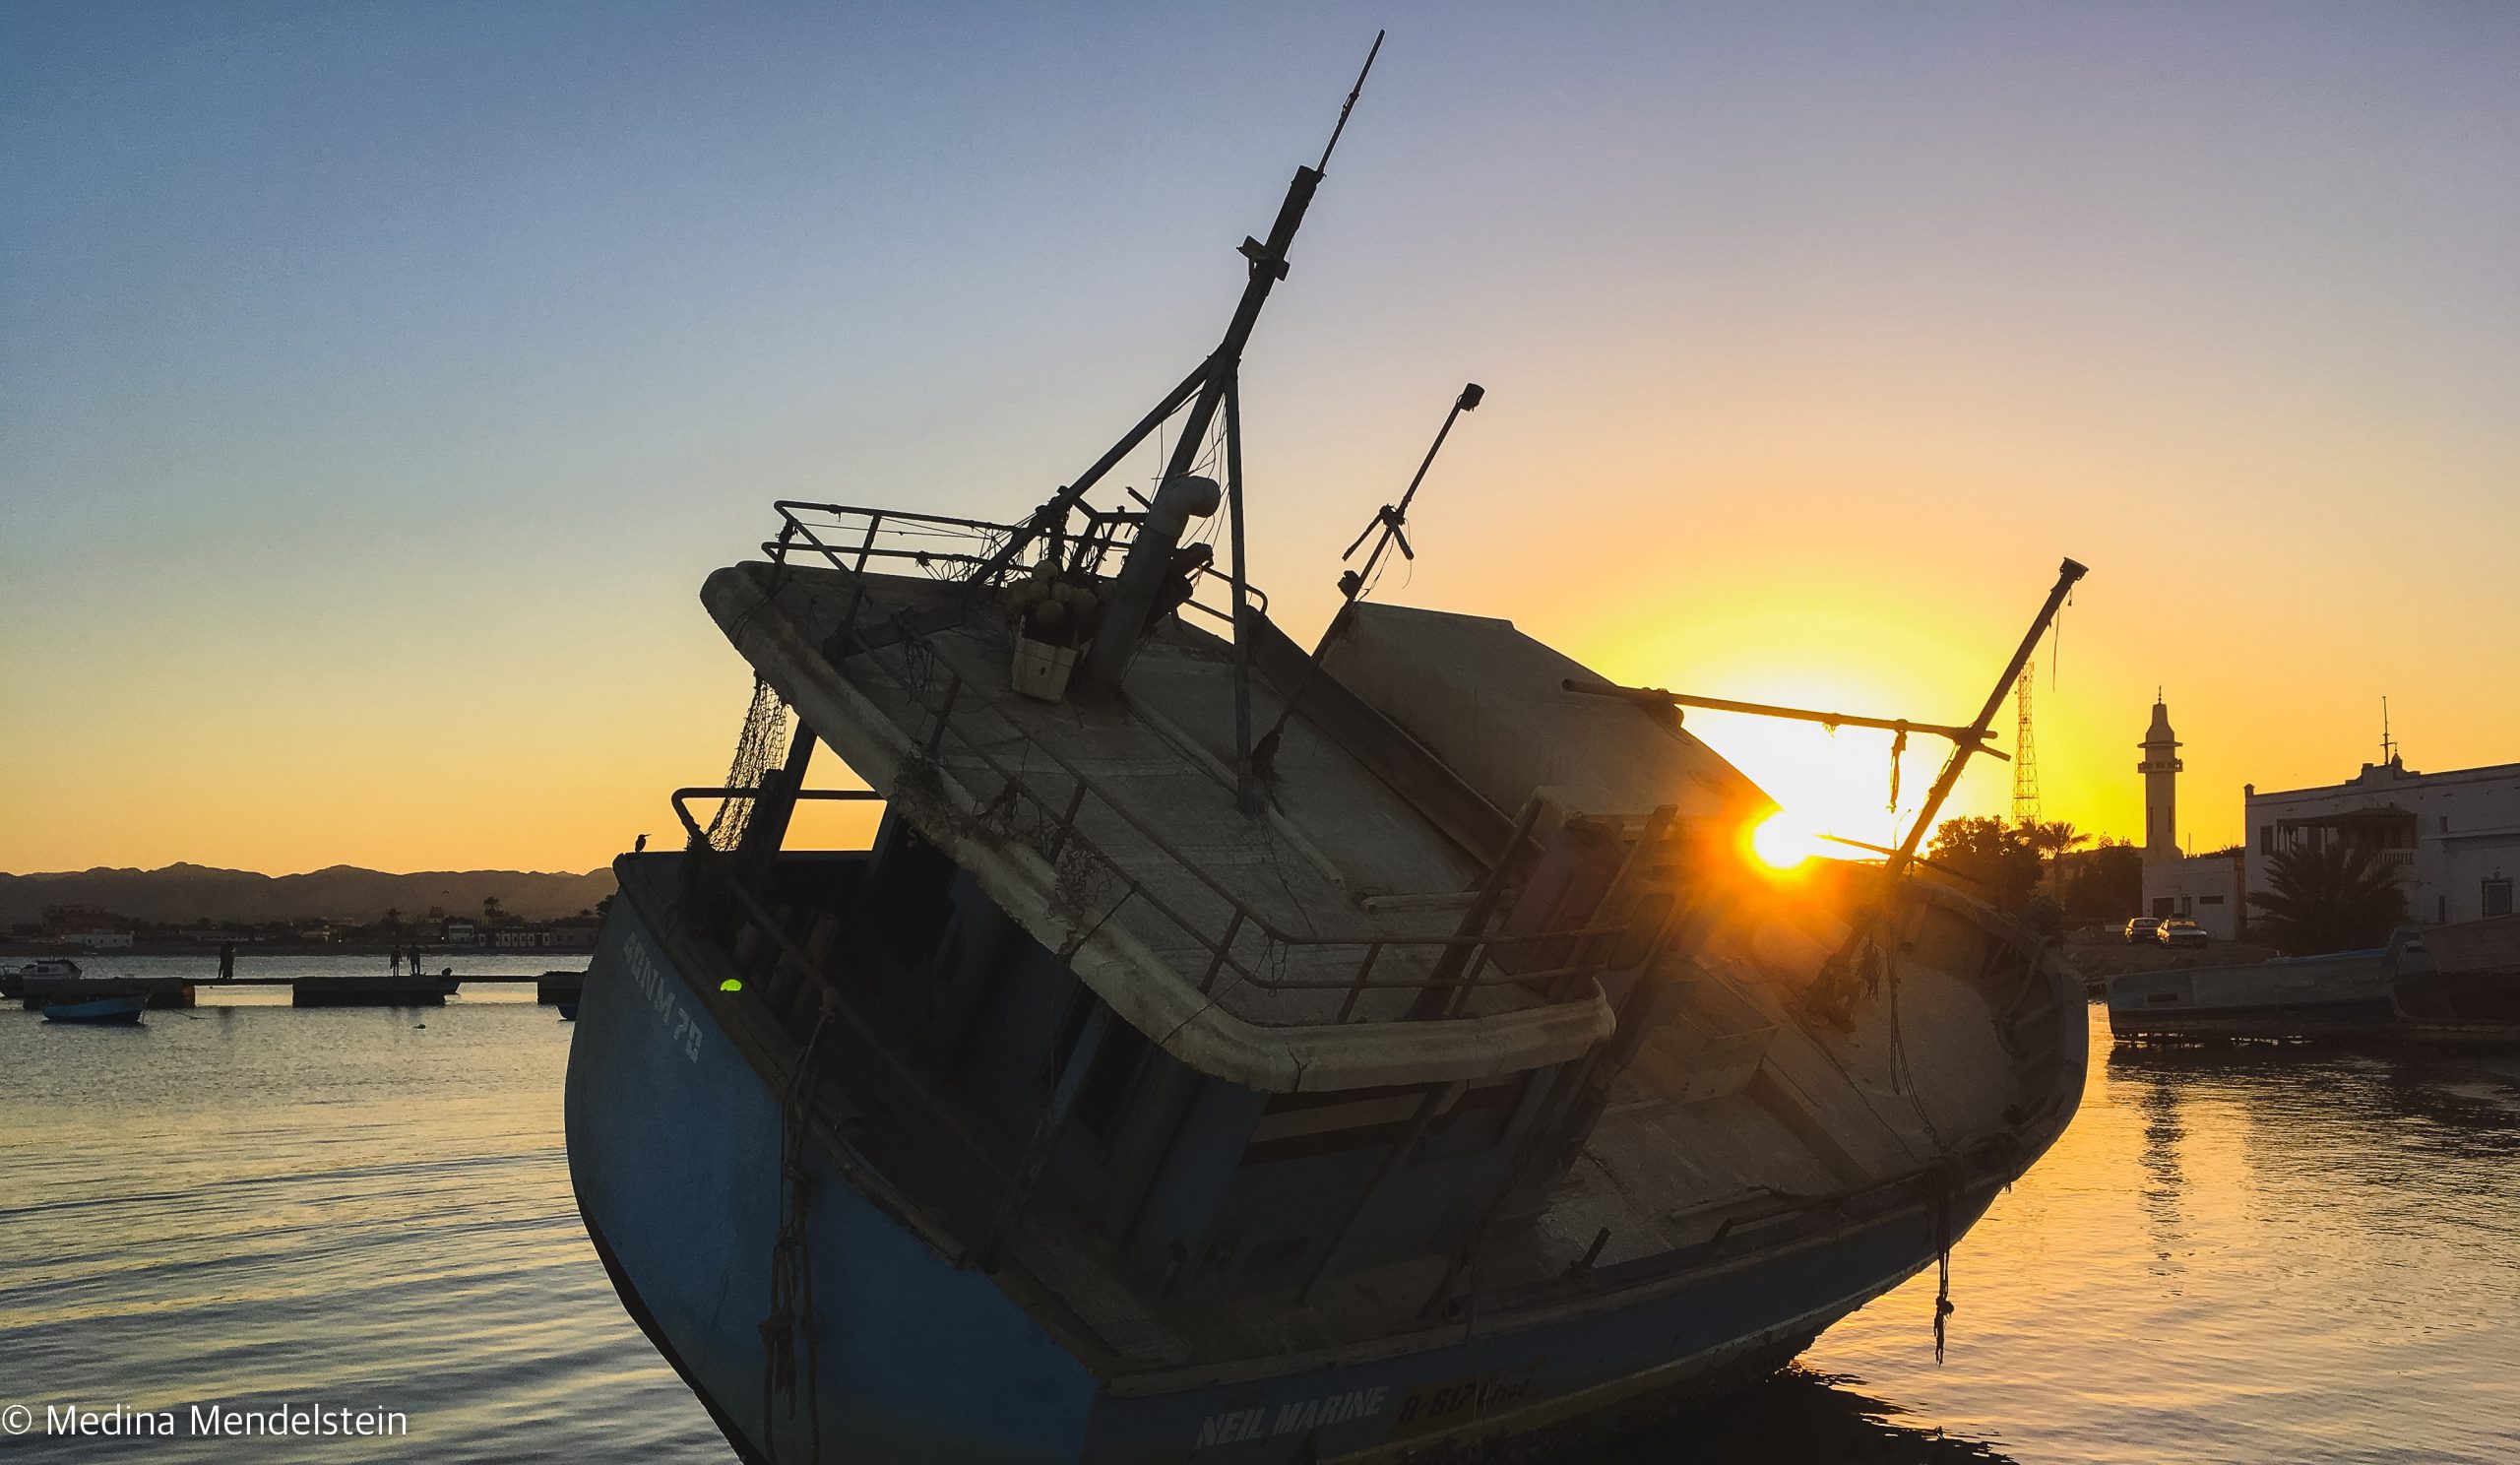 Fotografie aus: al-Quasai in Ägypten, Afrika: Ein altes Boot liegt im Hafen. Die Sonne vom Sonnenuntergang steht genau zwischen Bug und Steuerhaus.